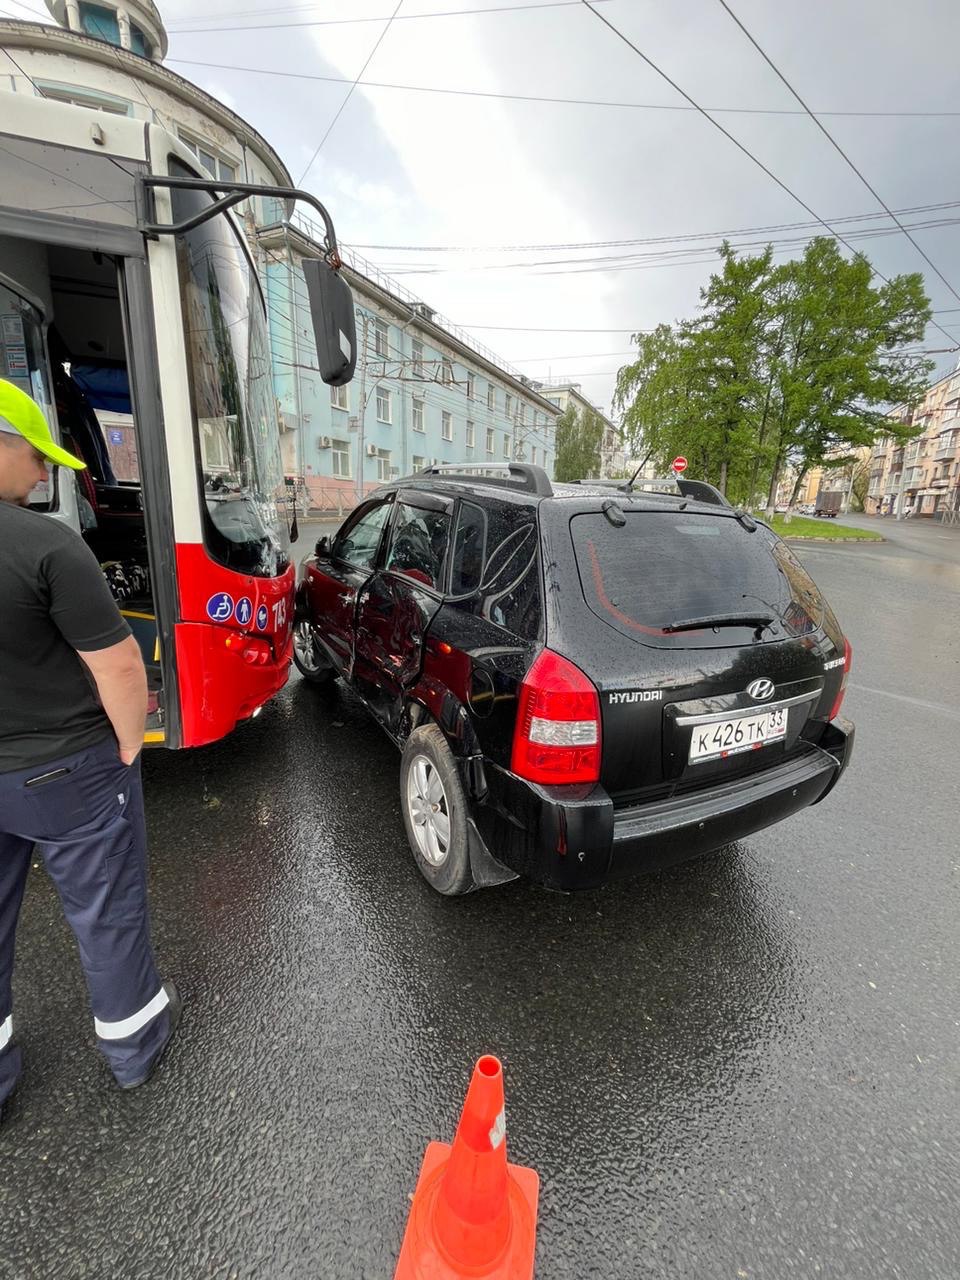 У "Хёндай" бочина всмятку: во Владимире городской автобус помял легковушку